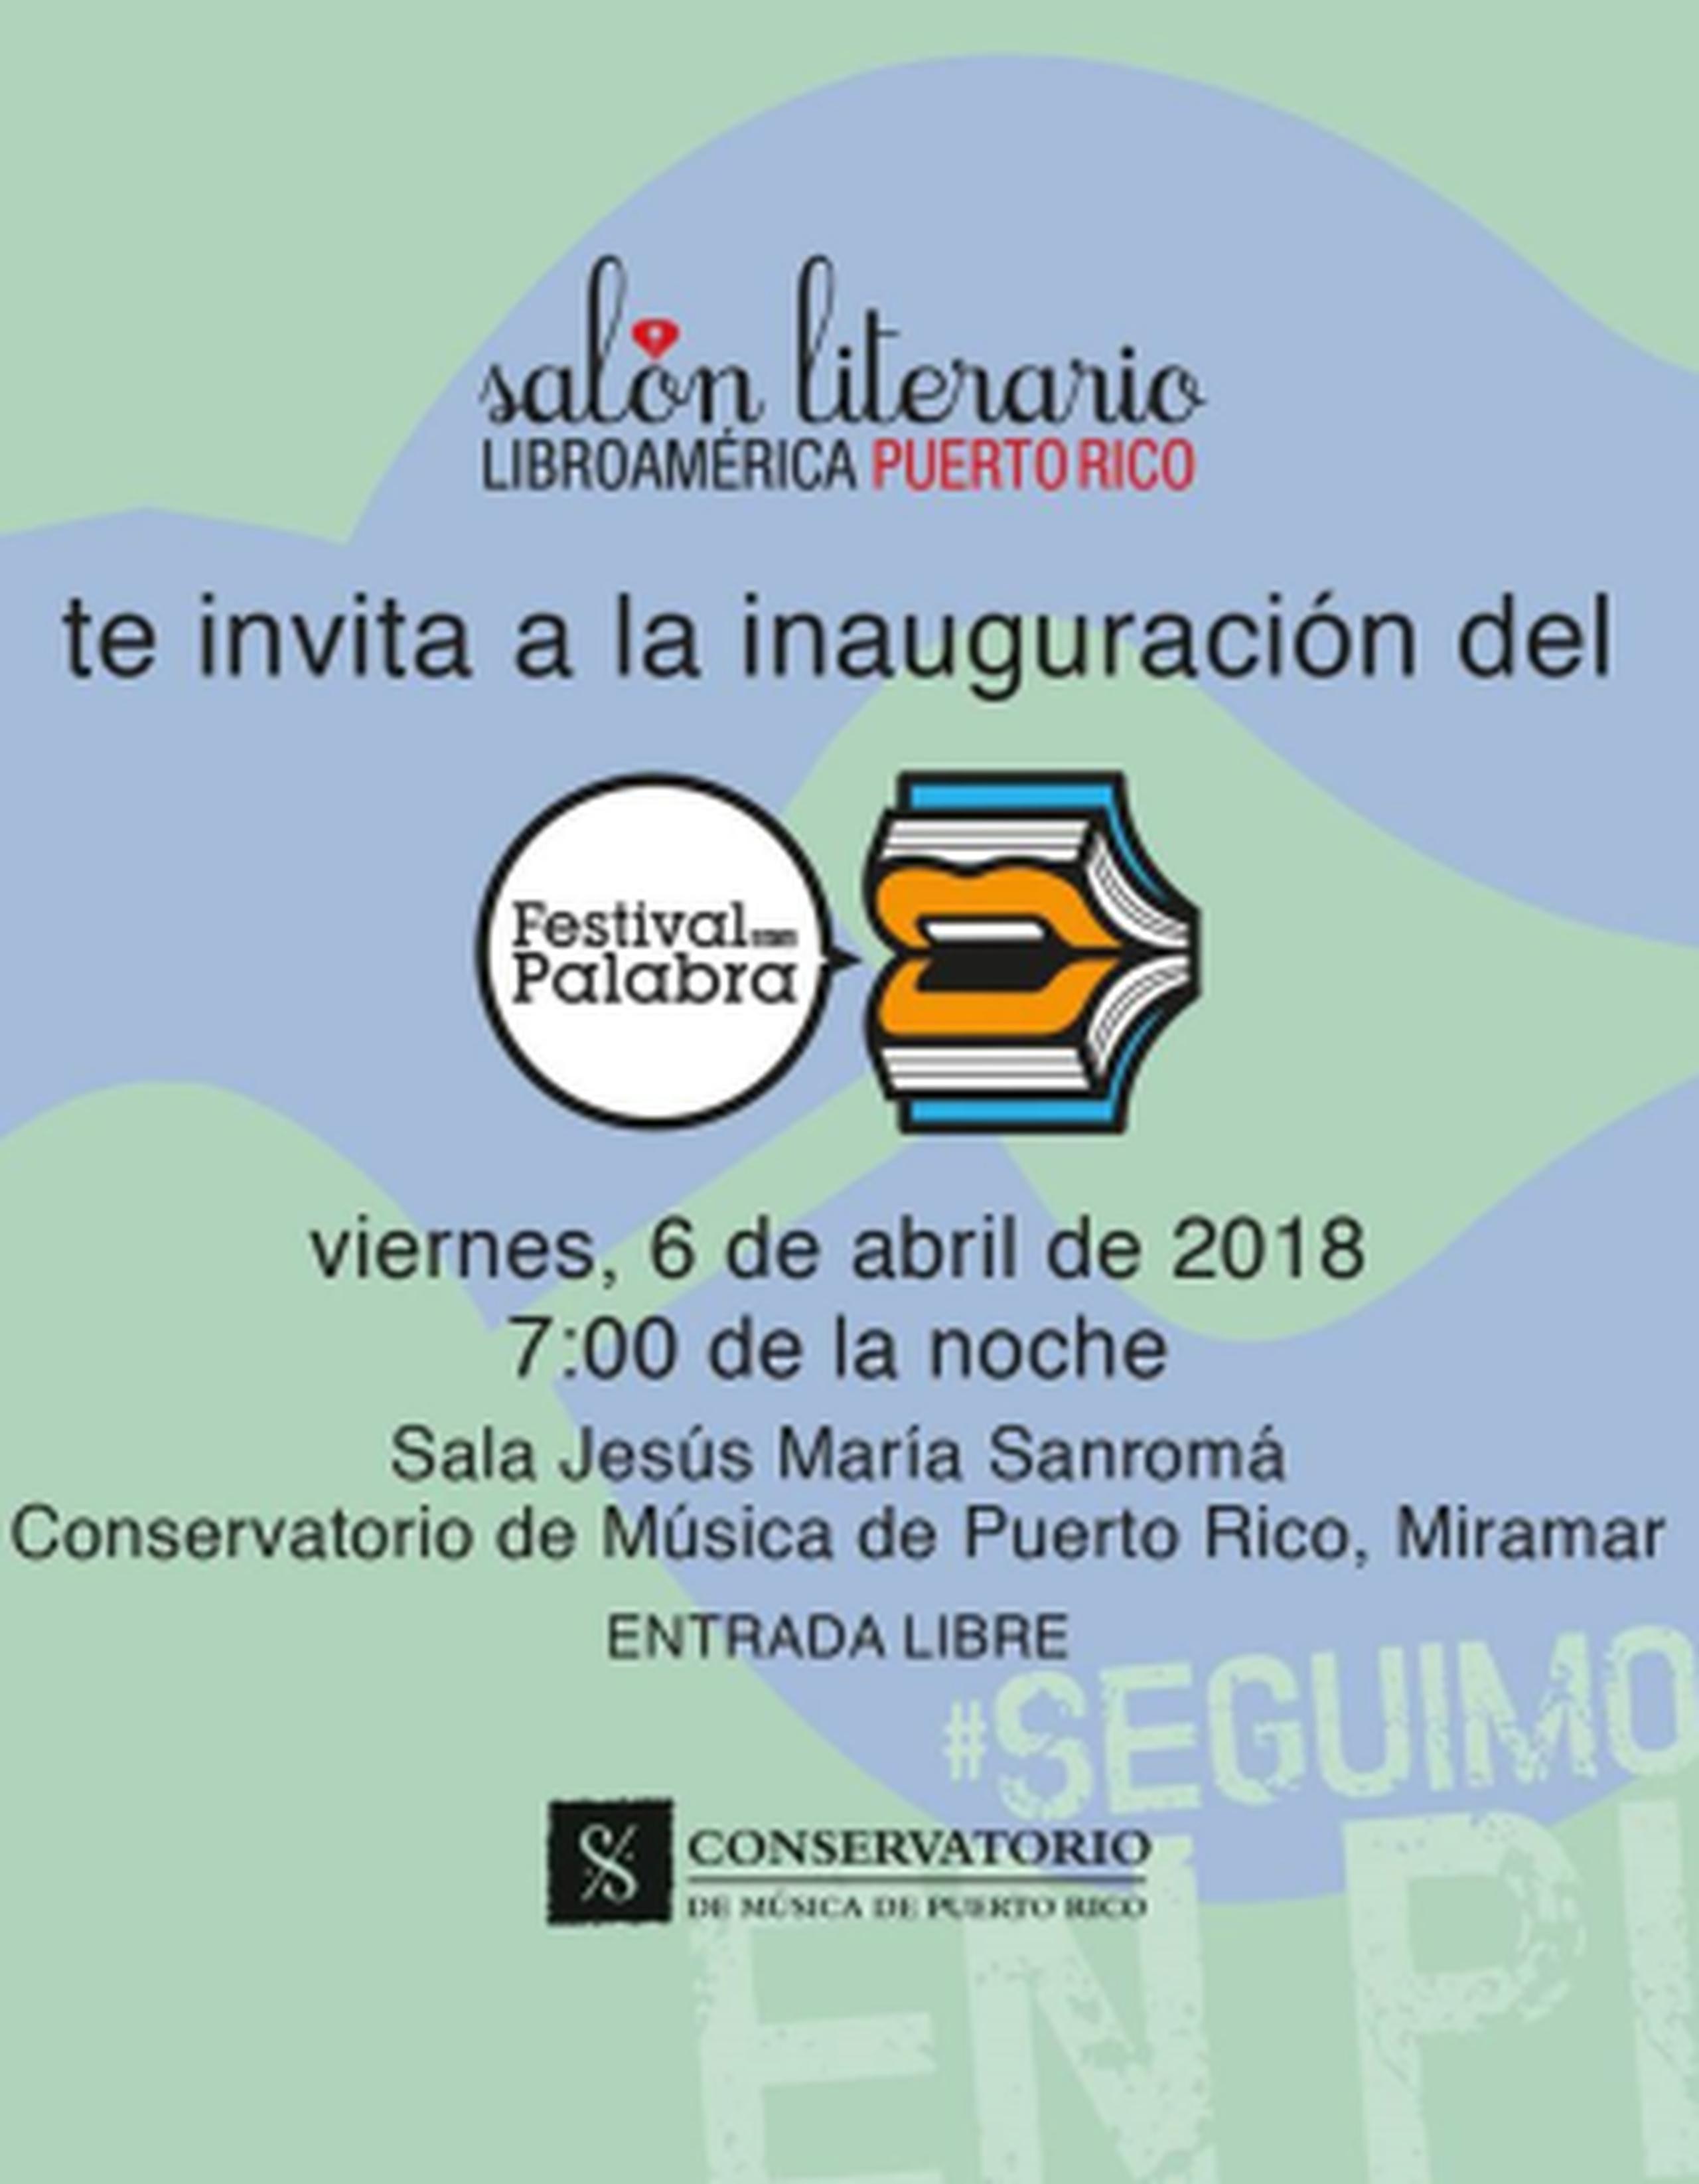 El evento también contará con un nutrido programa de cine, actividades para niños, lectura de poesía, conferencias sobre la narrativa puertorriqueña y editoriales emergentes, entre otros temas de interés. (Facebook)